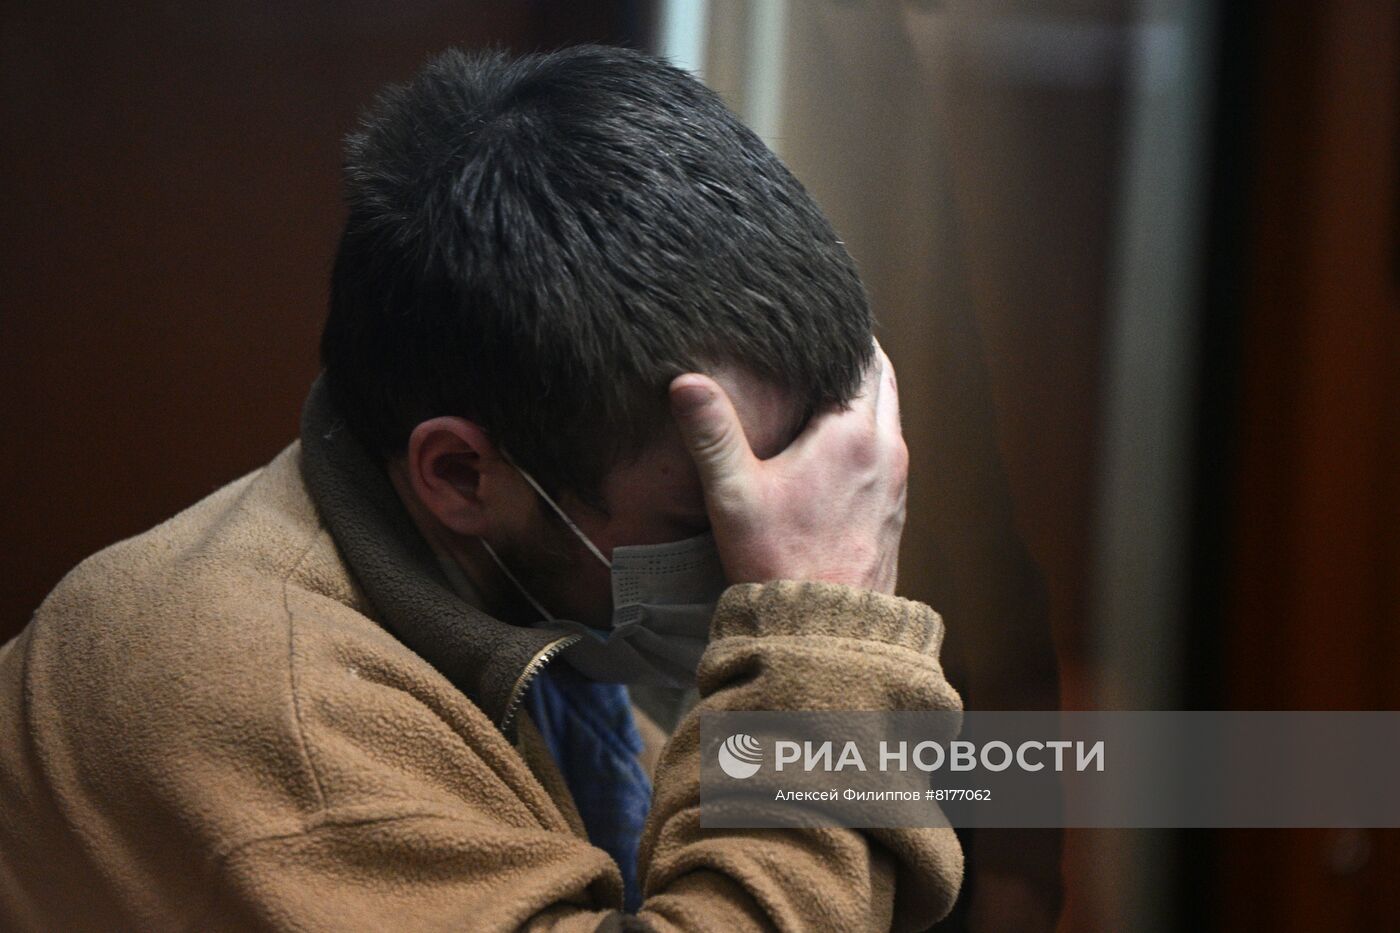 Избрание меры пресечения по делу о покушении на телеведущего Соловьева